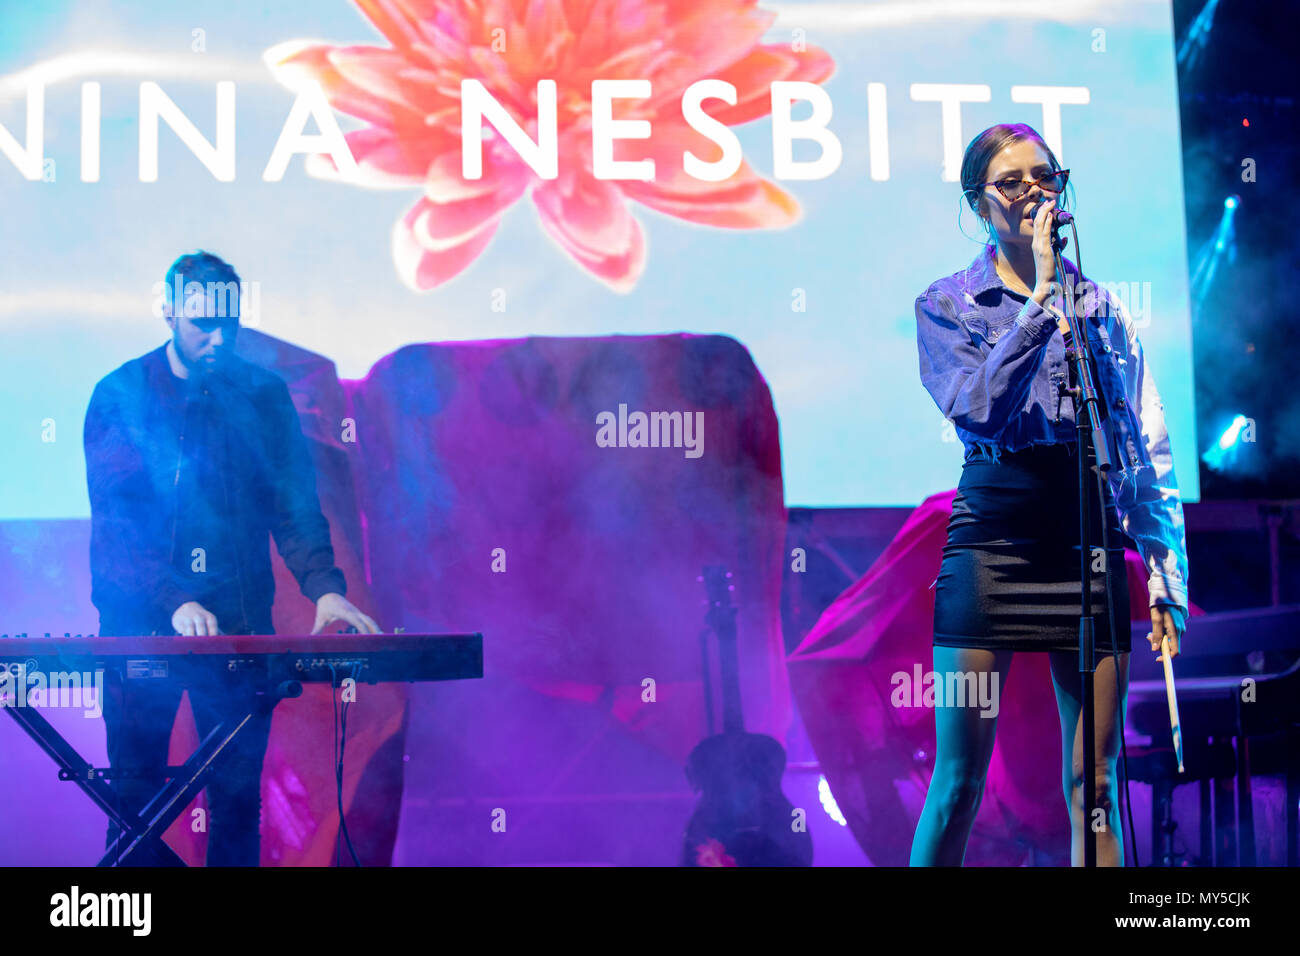 Cannes, France, 5 juin 2018 Nina Nesbitt en concert au Midem 2018, MIDEM, Cannes © ifnm / Alamy Live News Banque D'Images